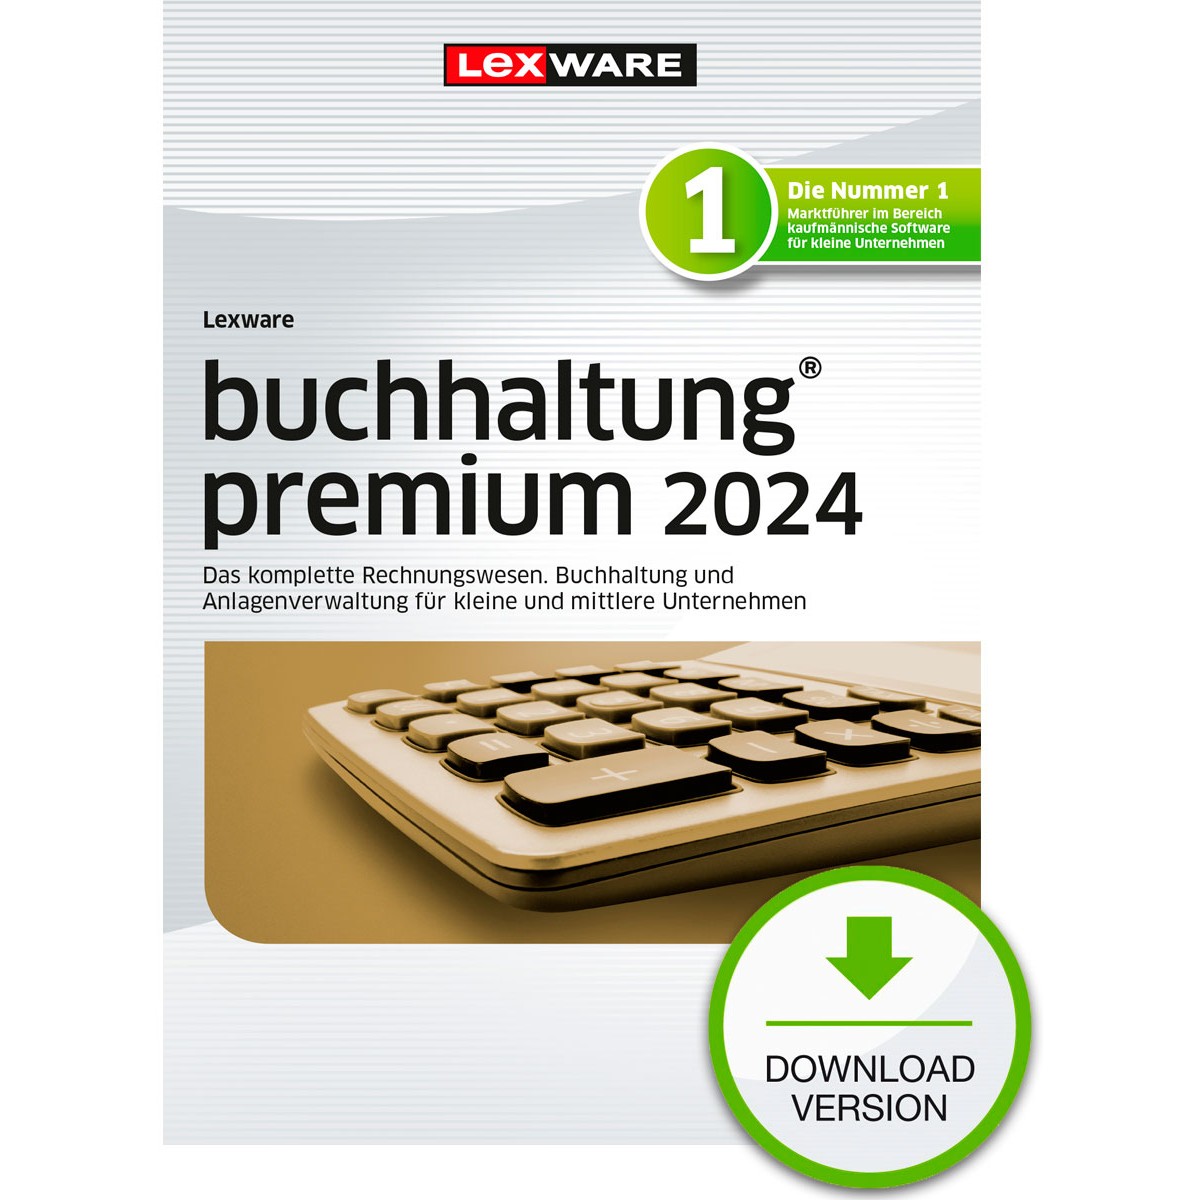 Lexware Buchhaltung Premium 2024 - 1 Devise. ABO - ESD -DownloadESD - 02034-2031